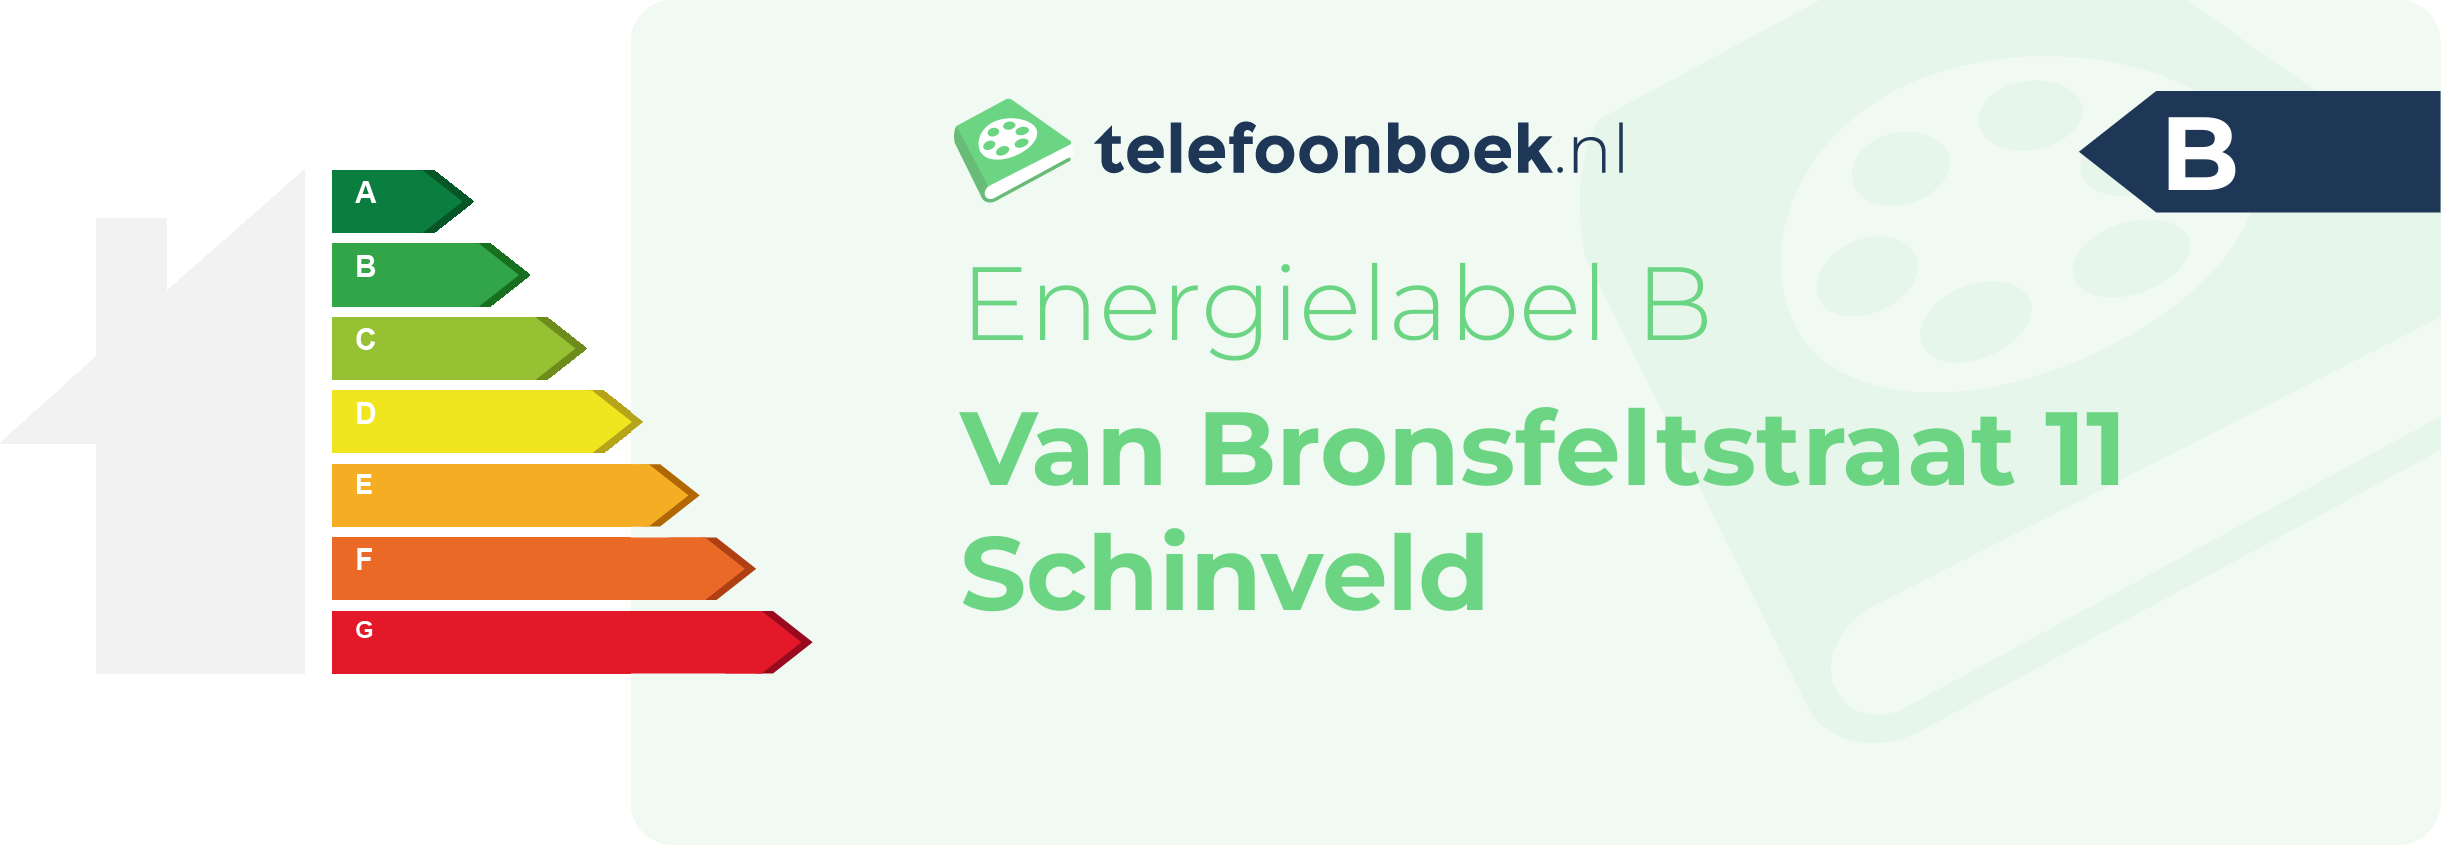 Energielabel Van Bronsfeltstraat 11 Schinveld